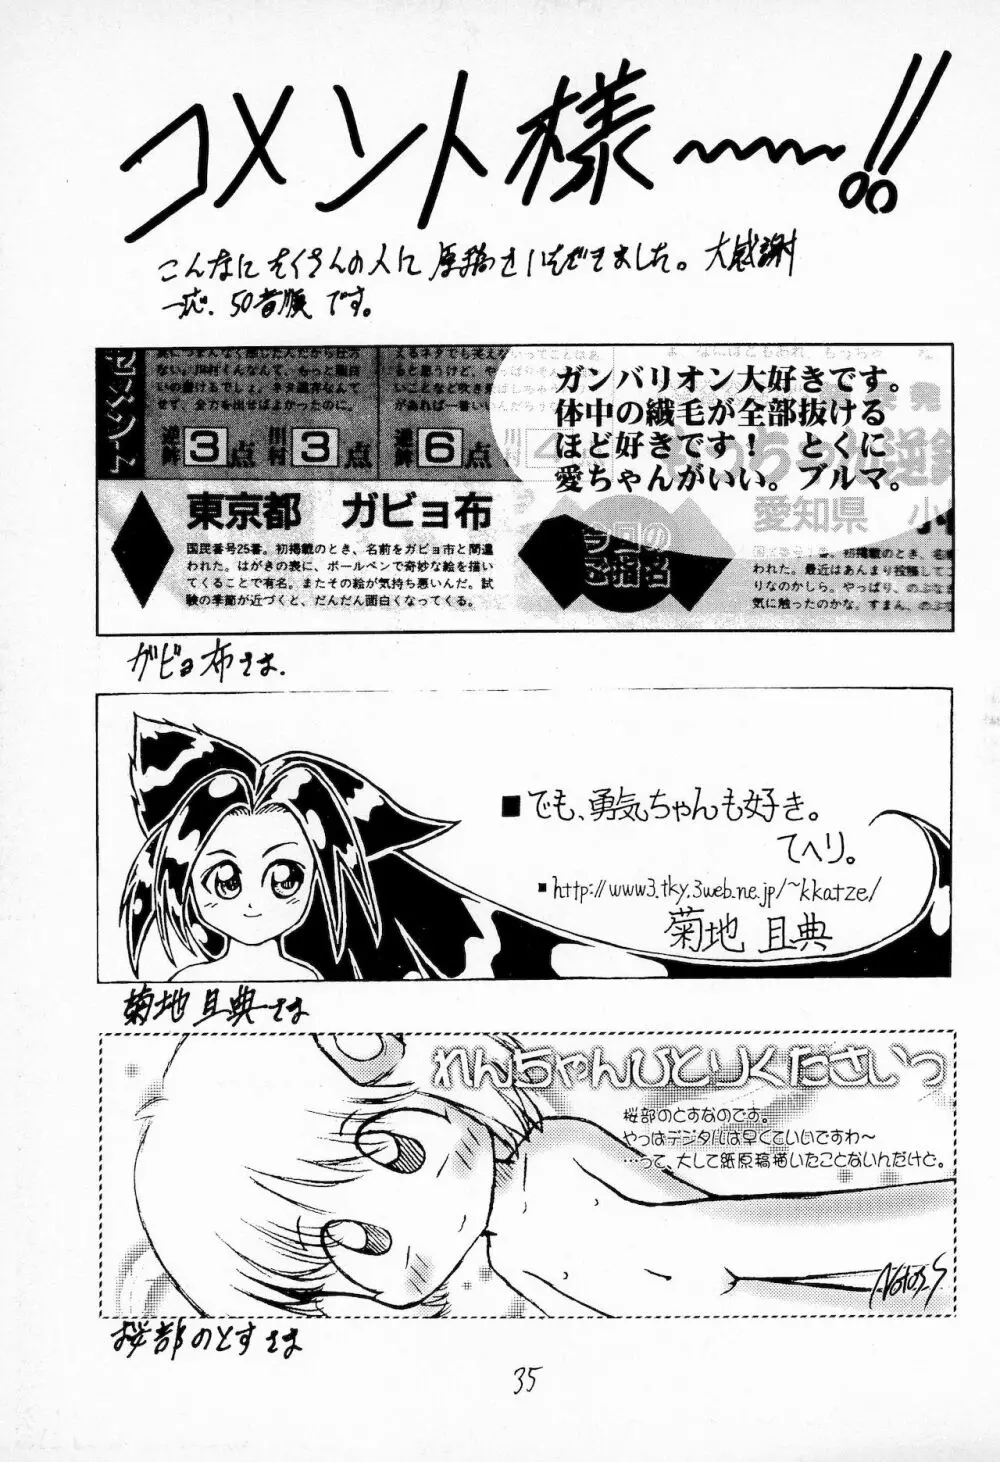 奮戦!ガンバリオン Version up.001 37ページ